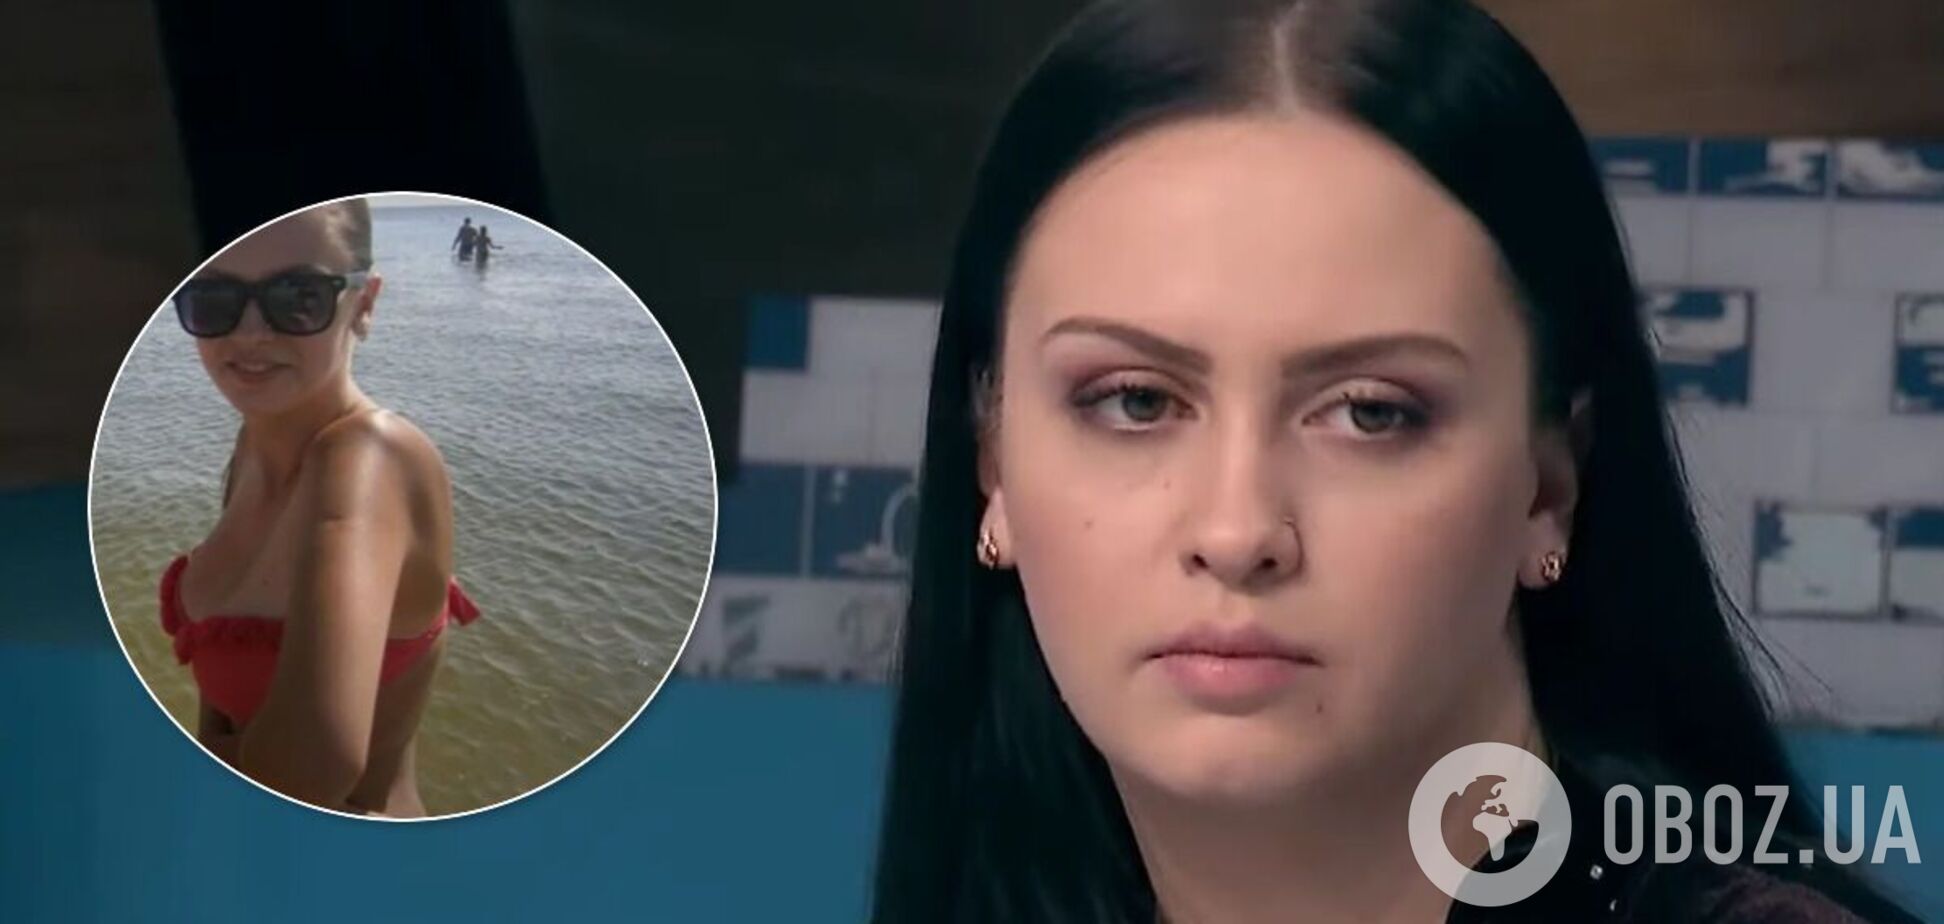 22-летняя украинка решила избавиться от 7-го размера груди